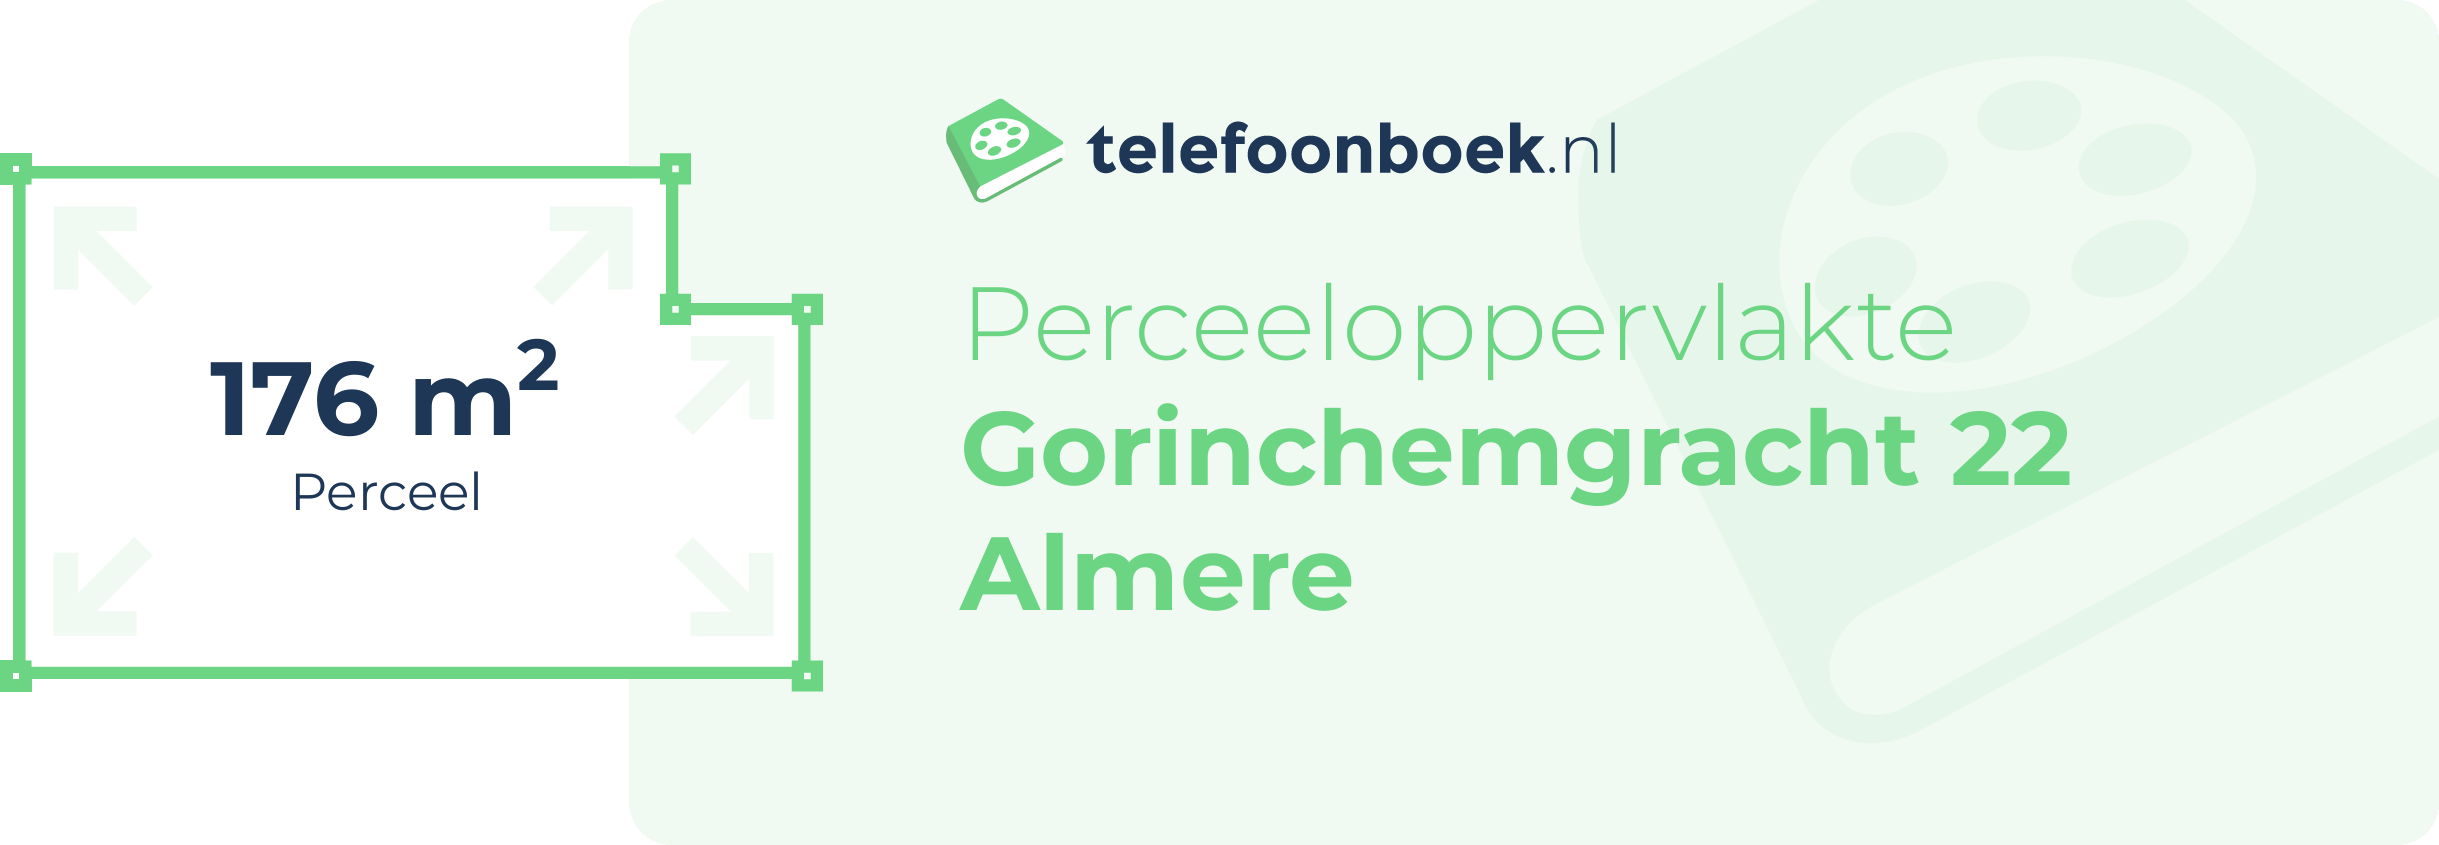 Perceeloppervlakte Gorinchemgracht 22 Almere